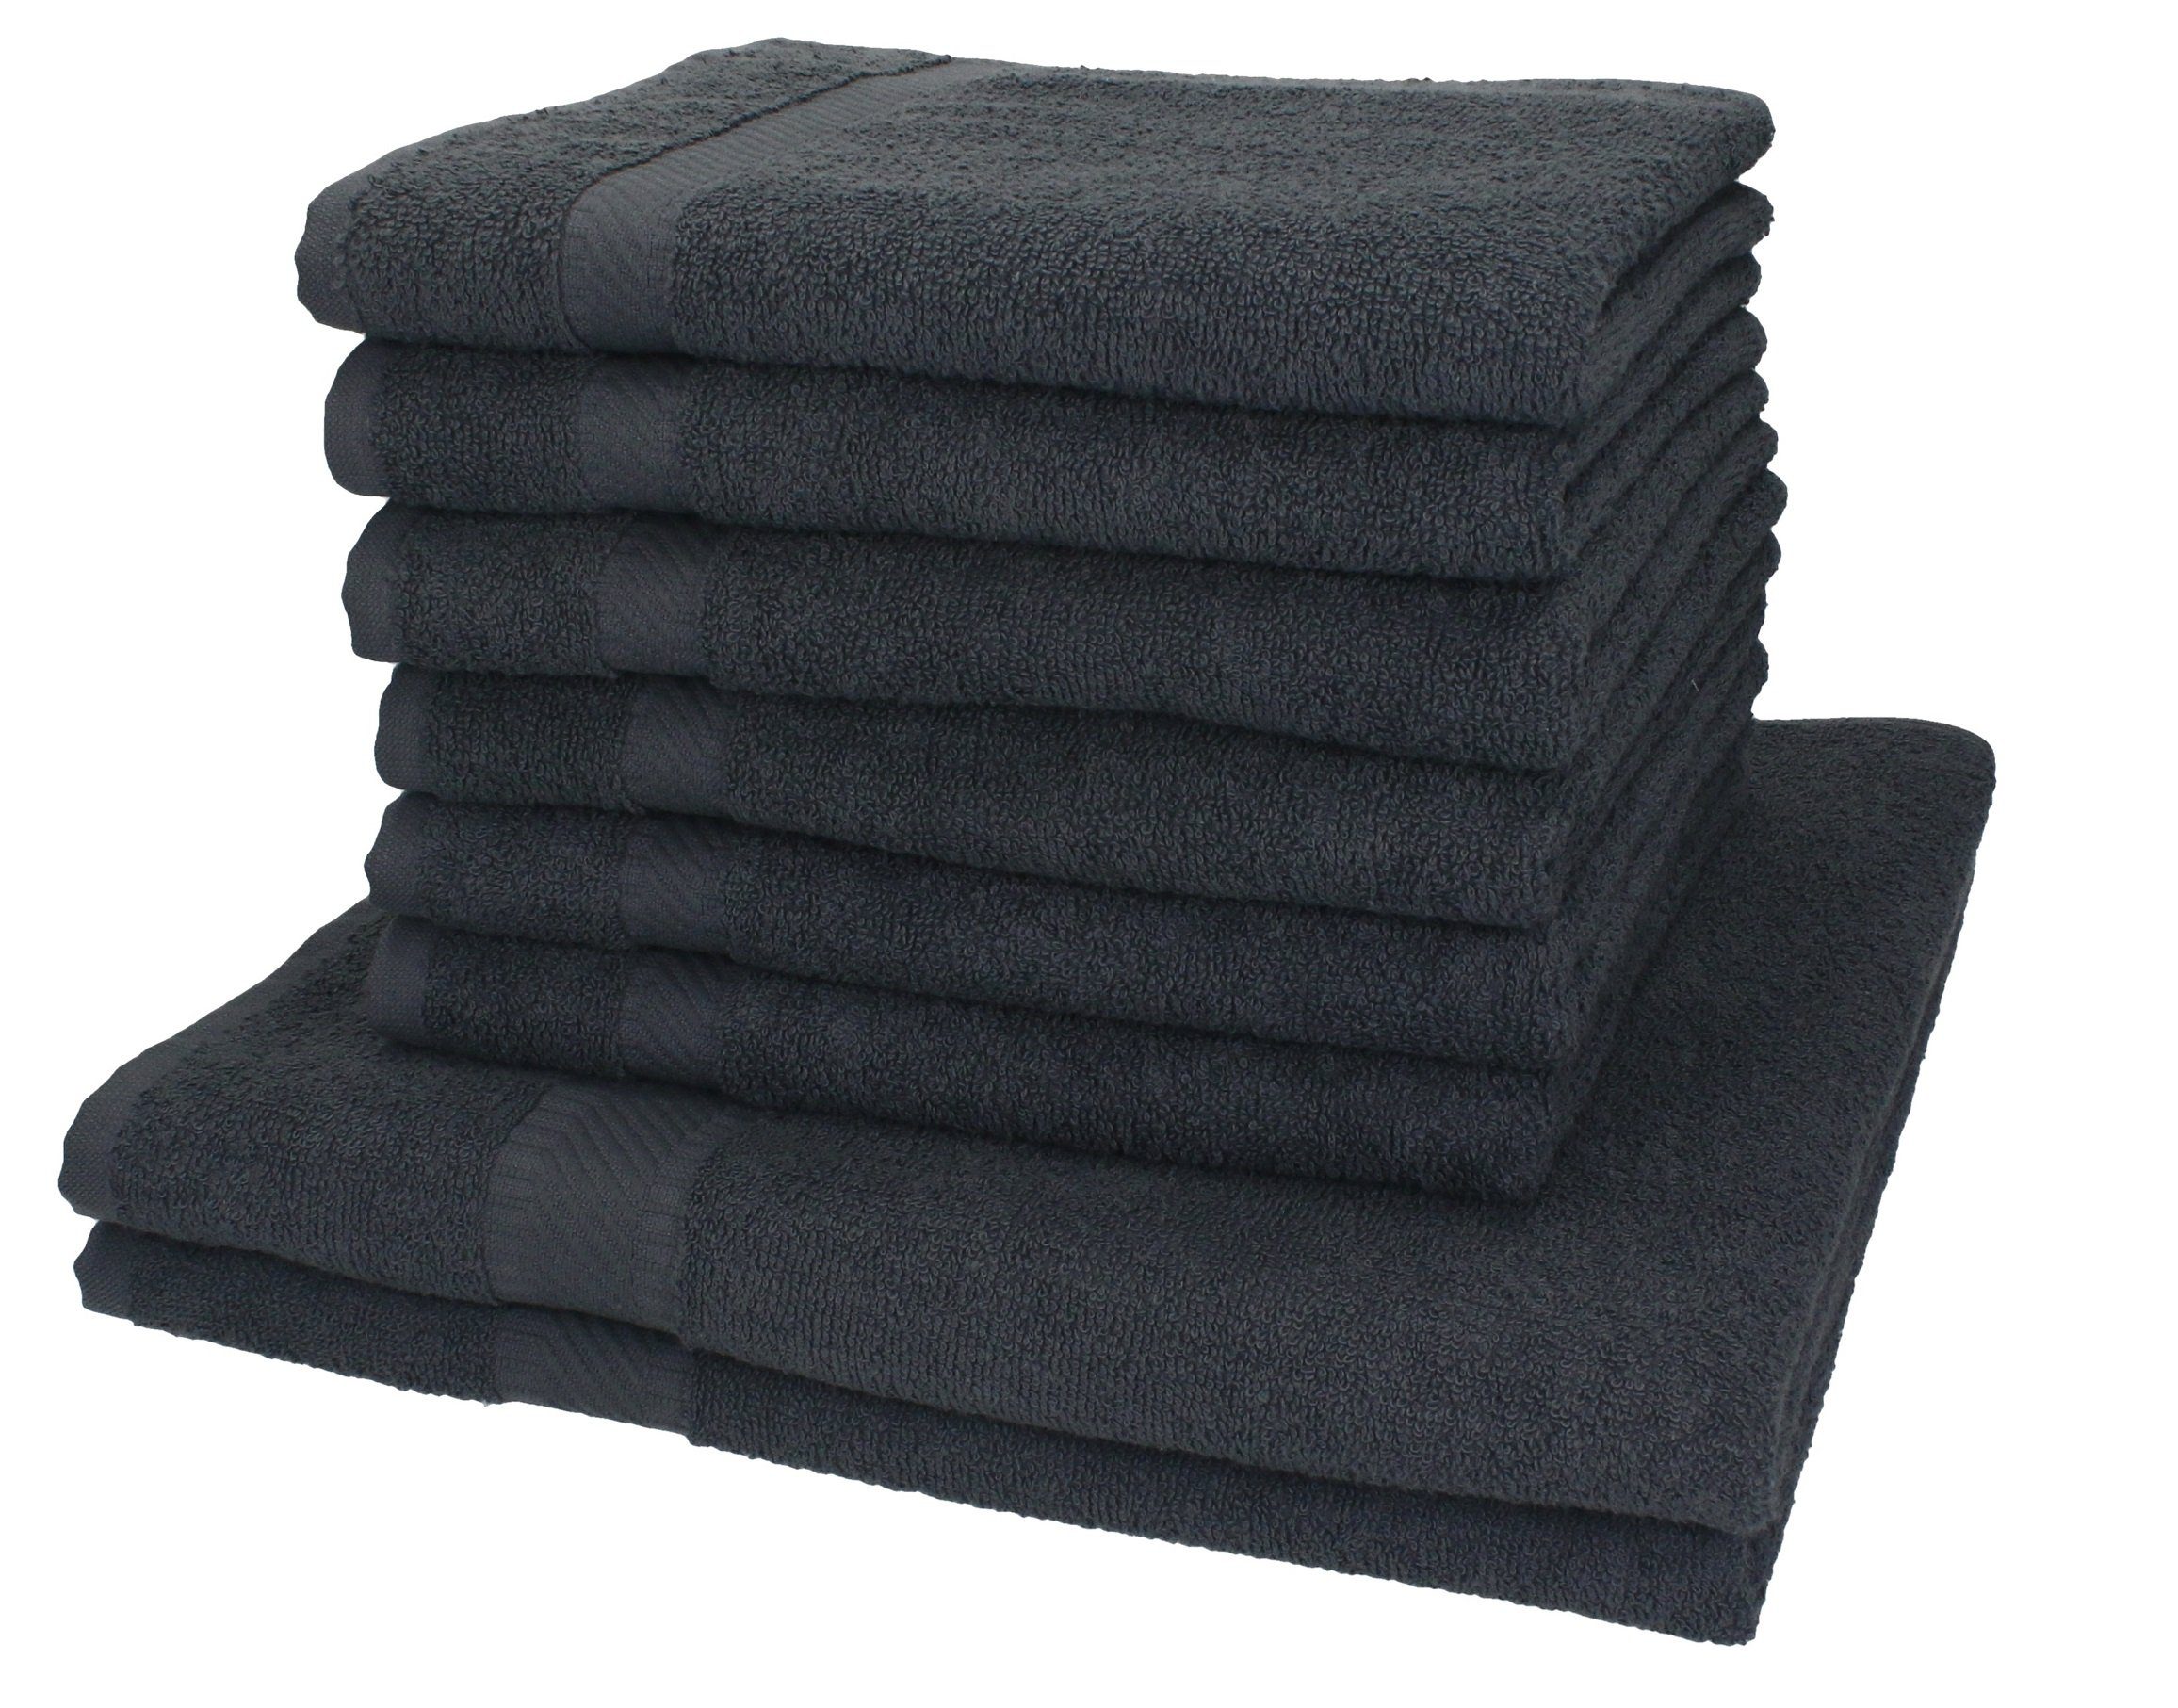 Betz Handtuch Set 8-tlg. Handtuch-Set Palermo Farbe anthrazit, 100% Baumwolle | Handtuch-Sets